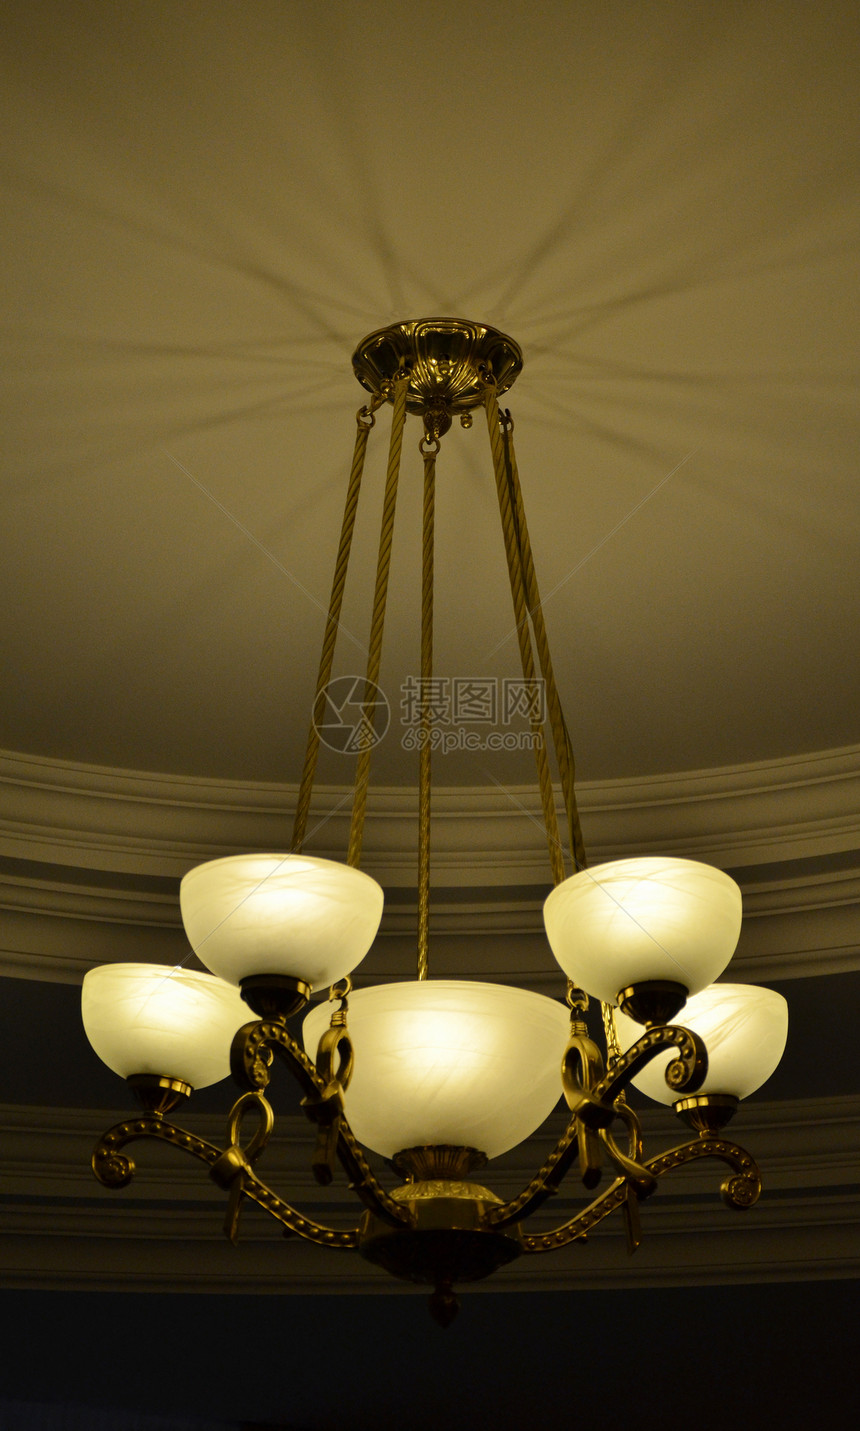 侧面有铜质5光灯吊灯天花板治具风格奢华玻璃青铜灯光绳索模具财富图片